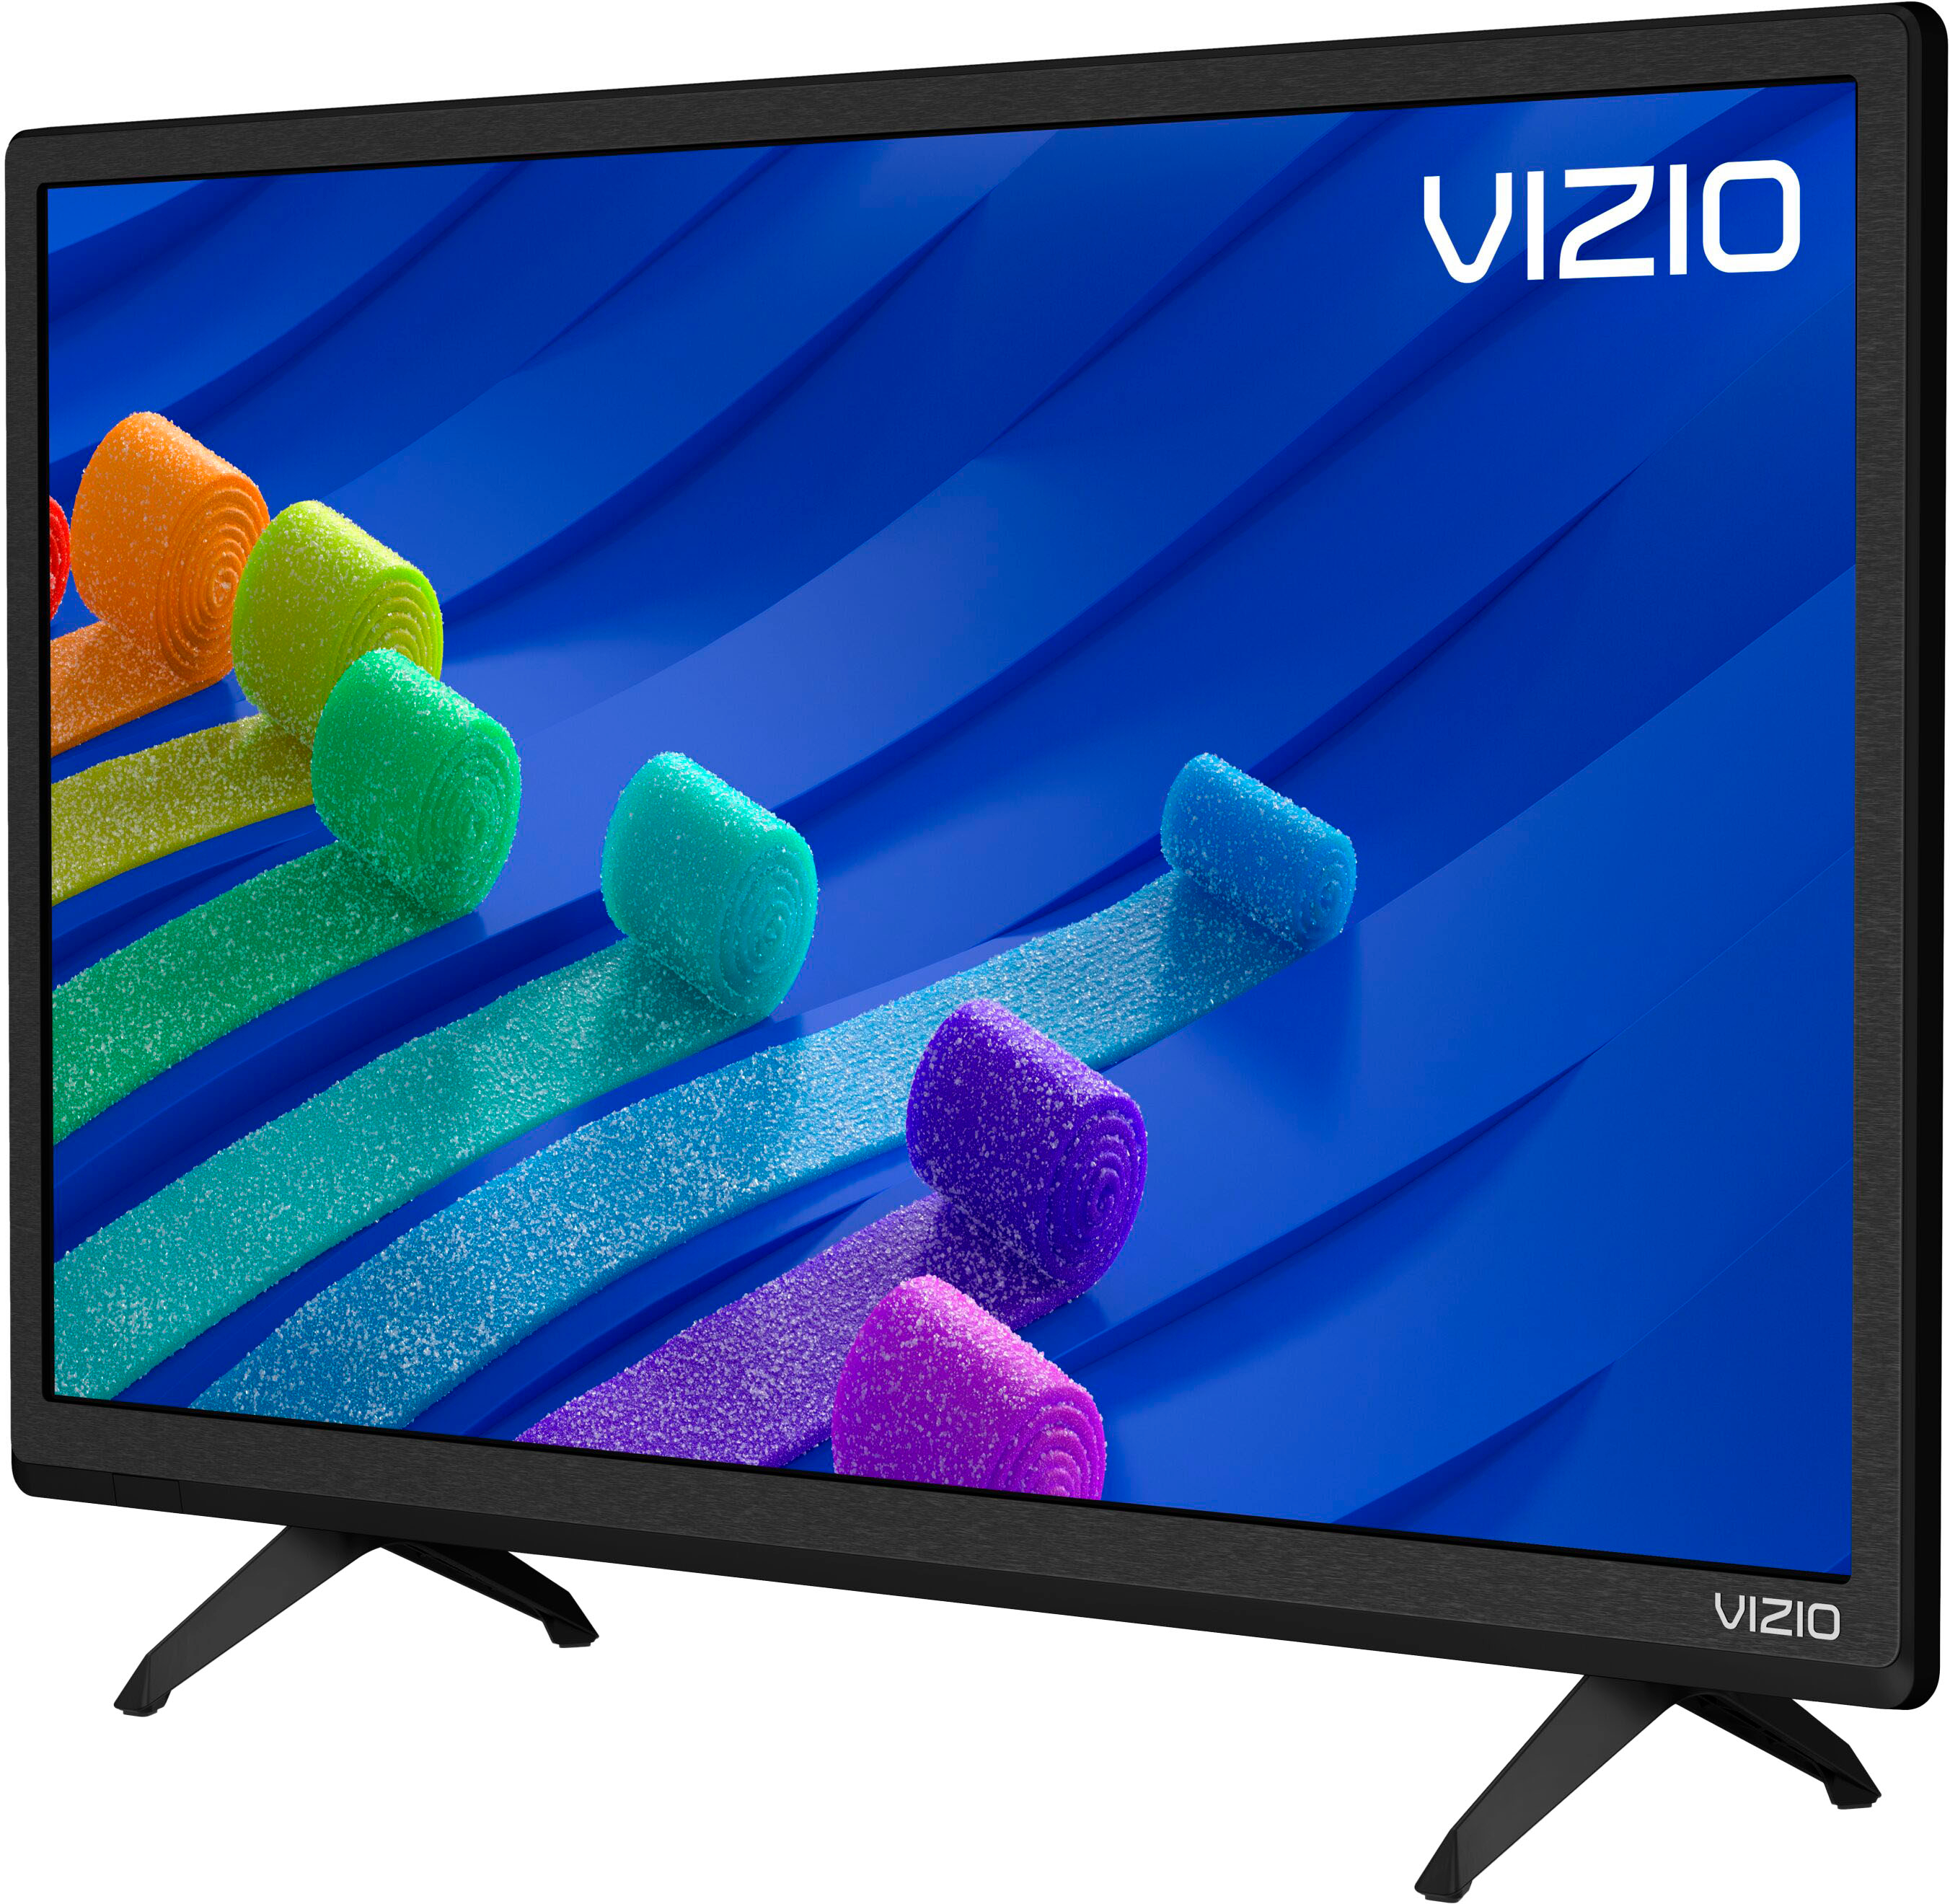 Back View: VIZIO - 24" Class D-Series LED 720P Smart TV